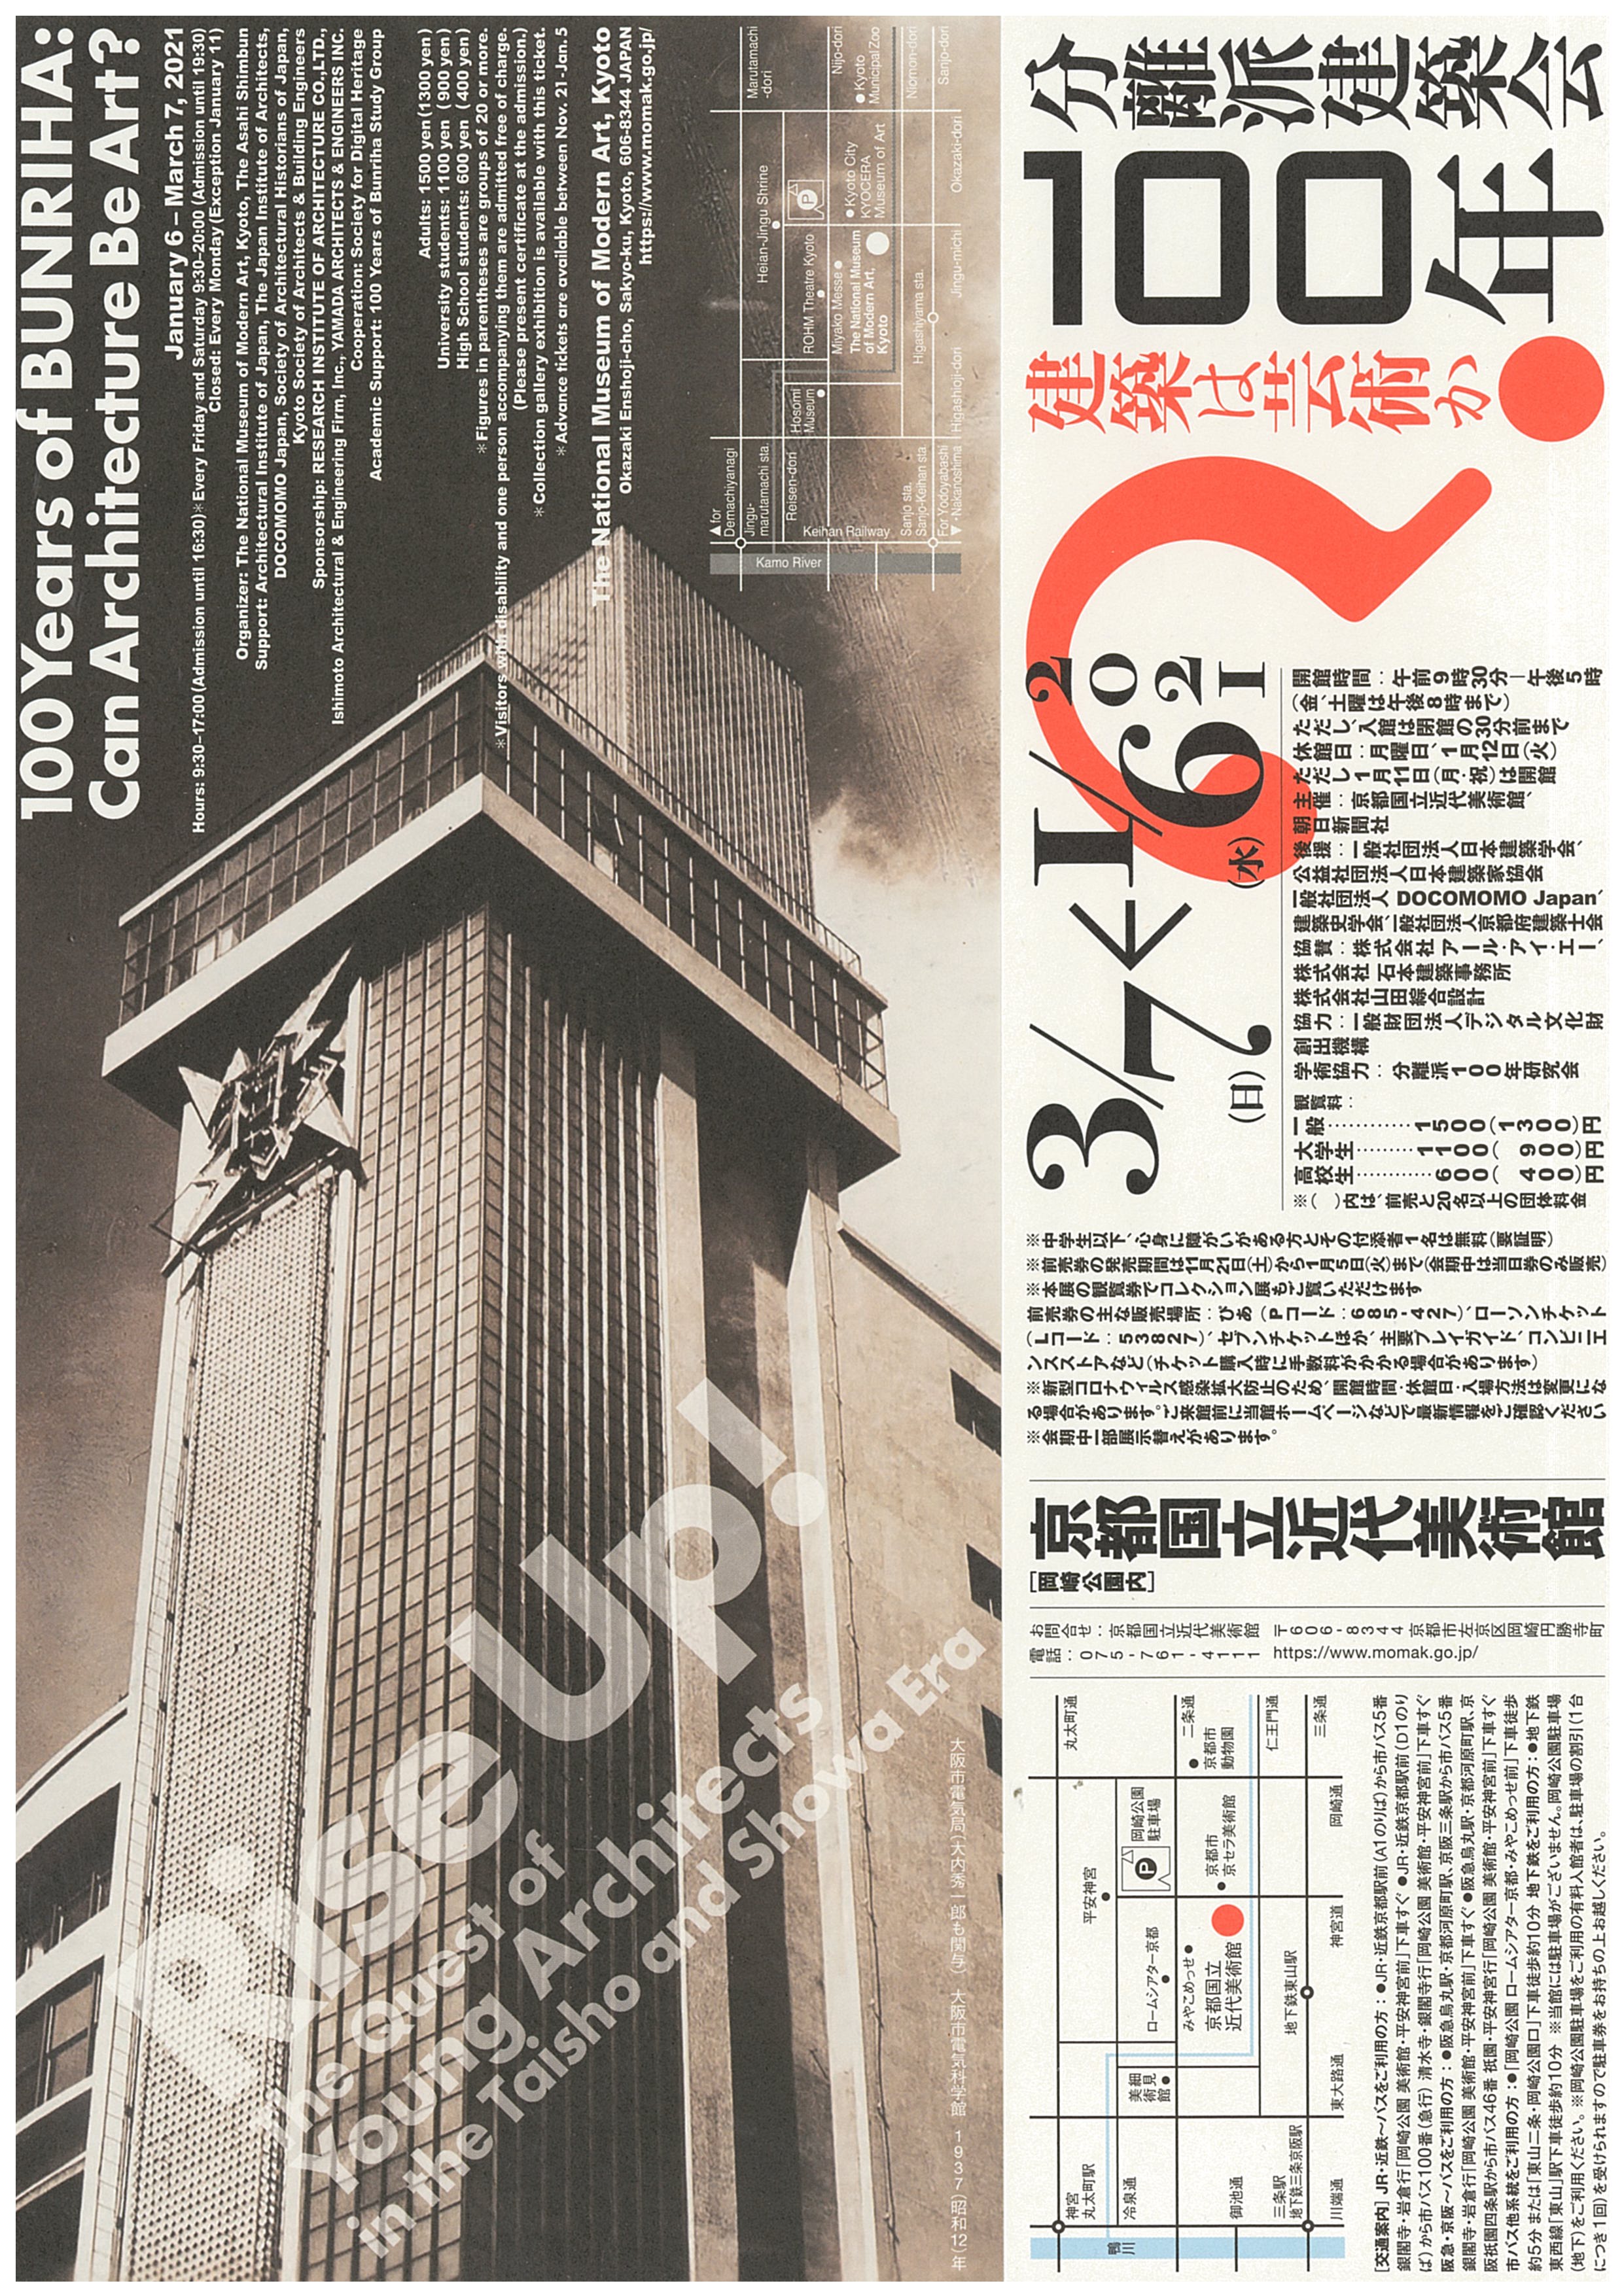 「分離派建築会100年展」開催